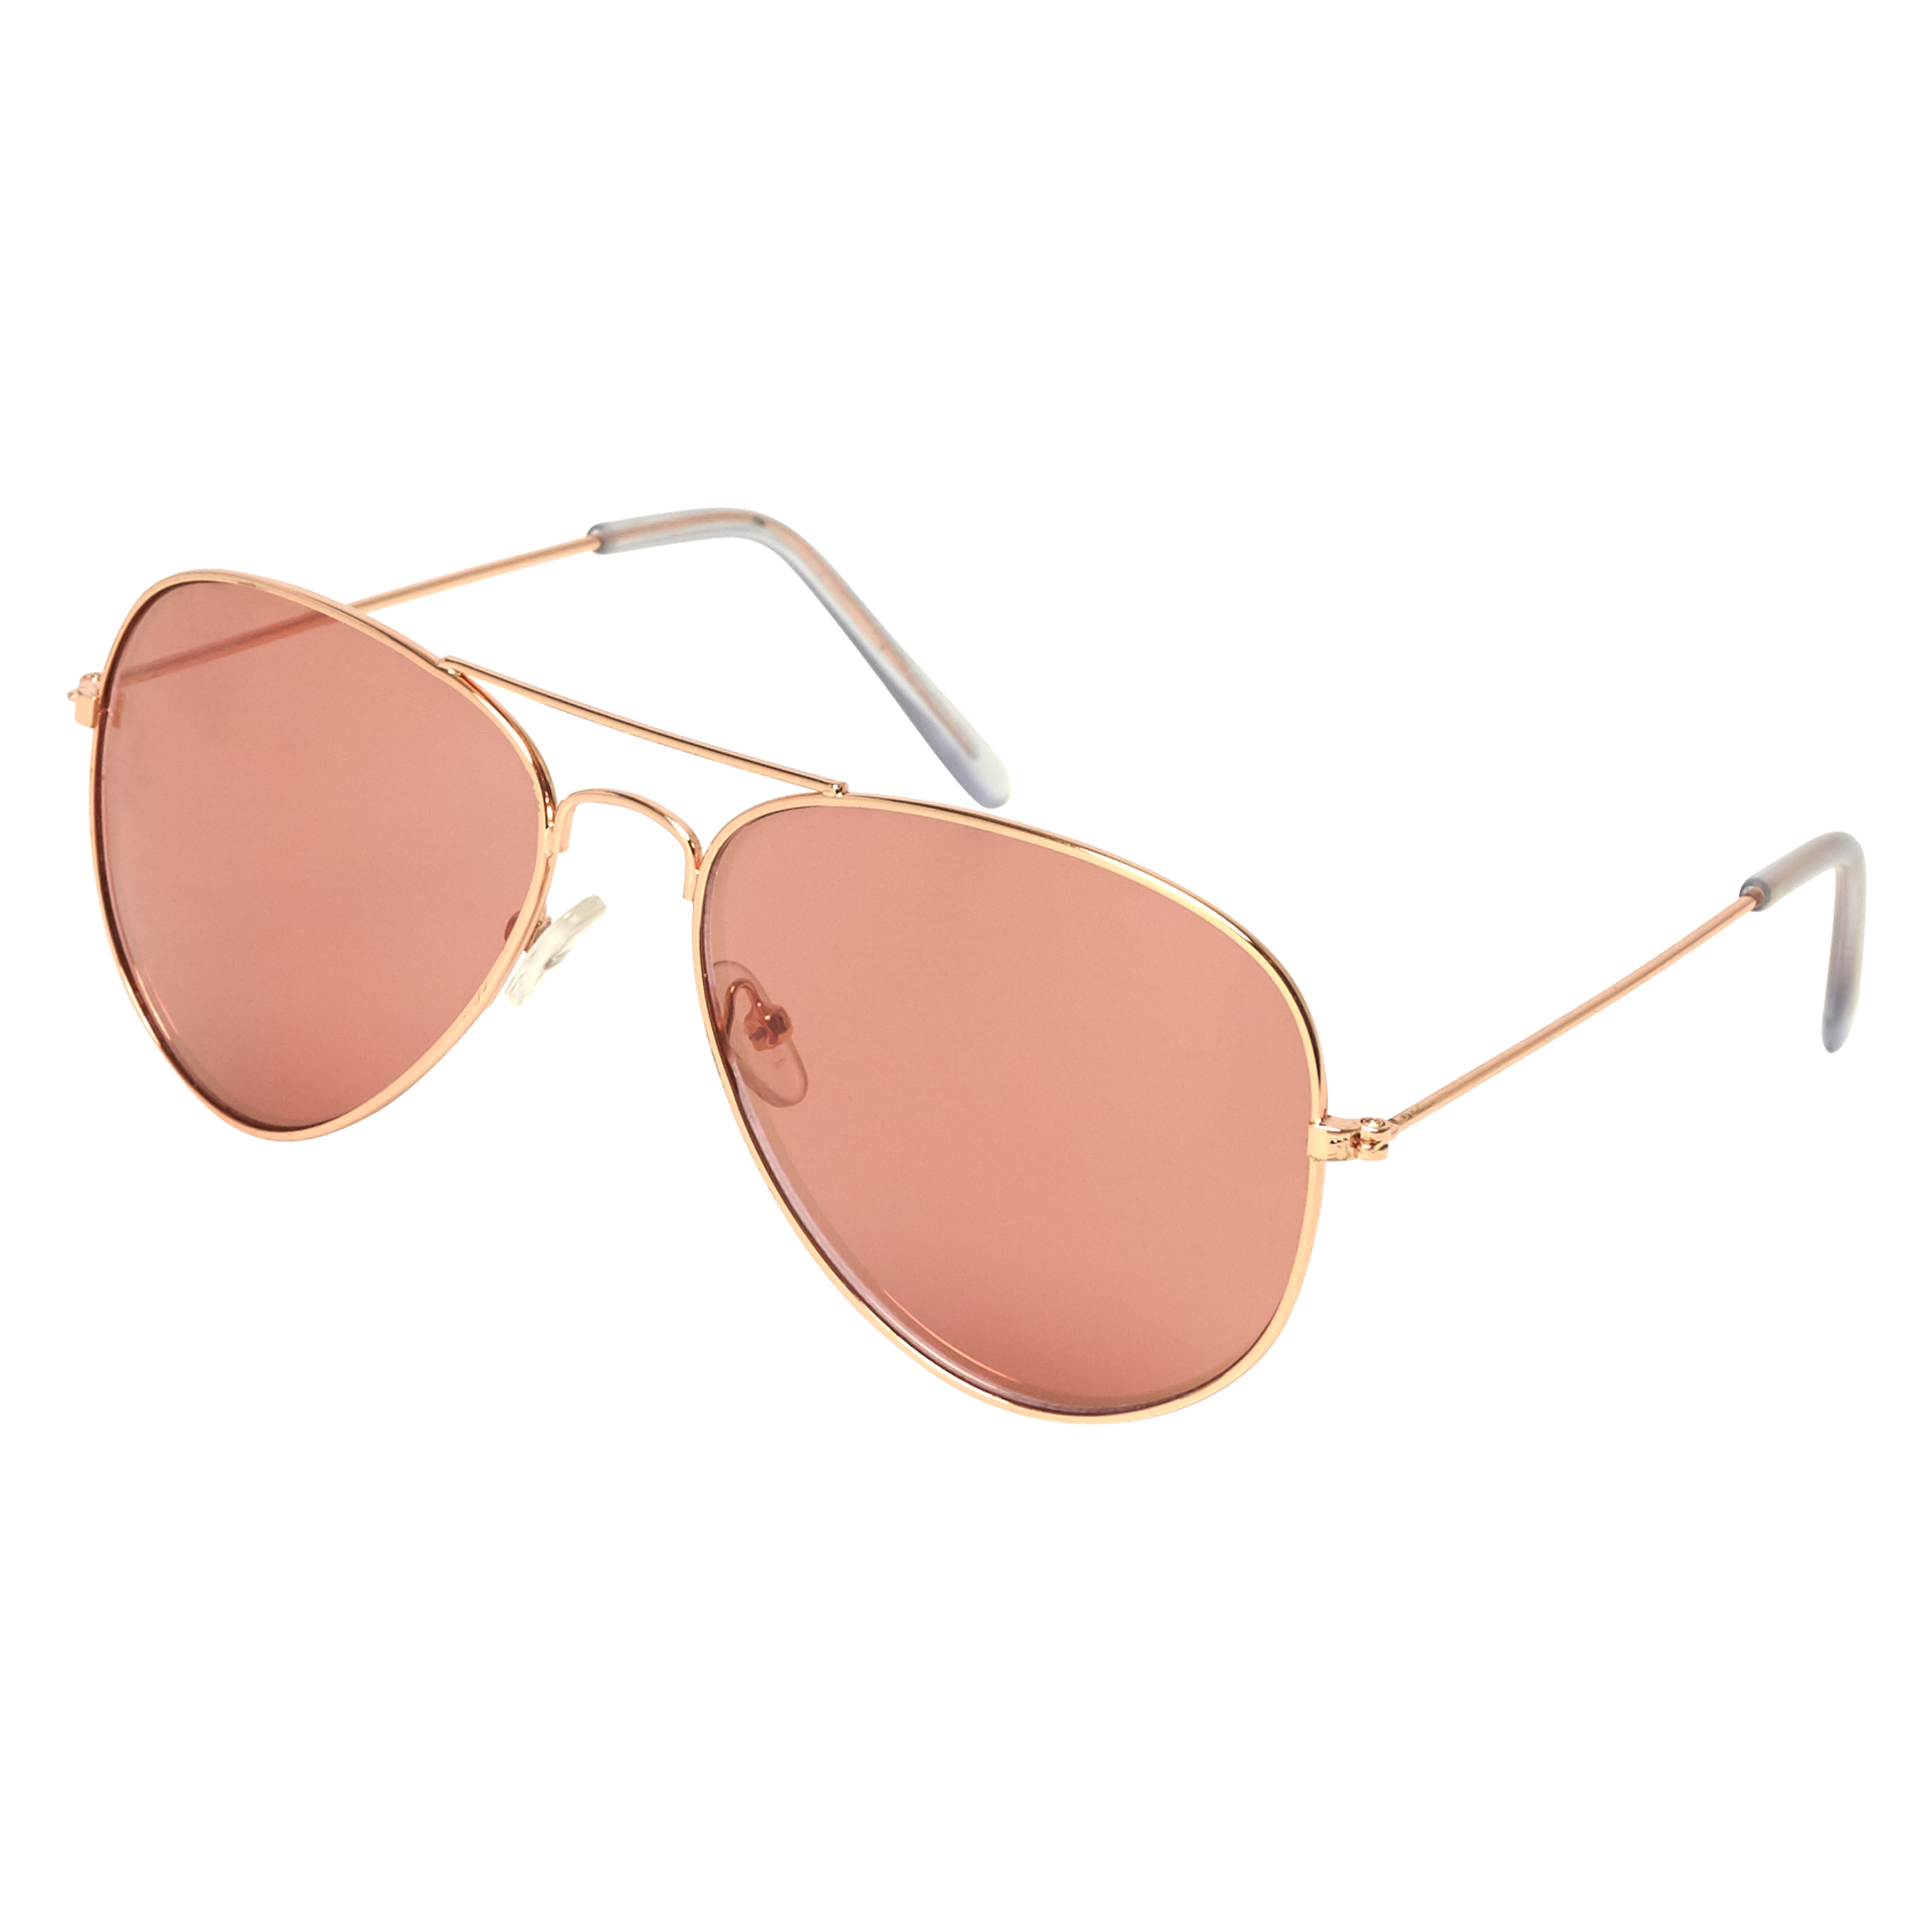 Sunglasses Aviator, Różowy, main